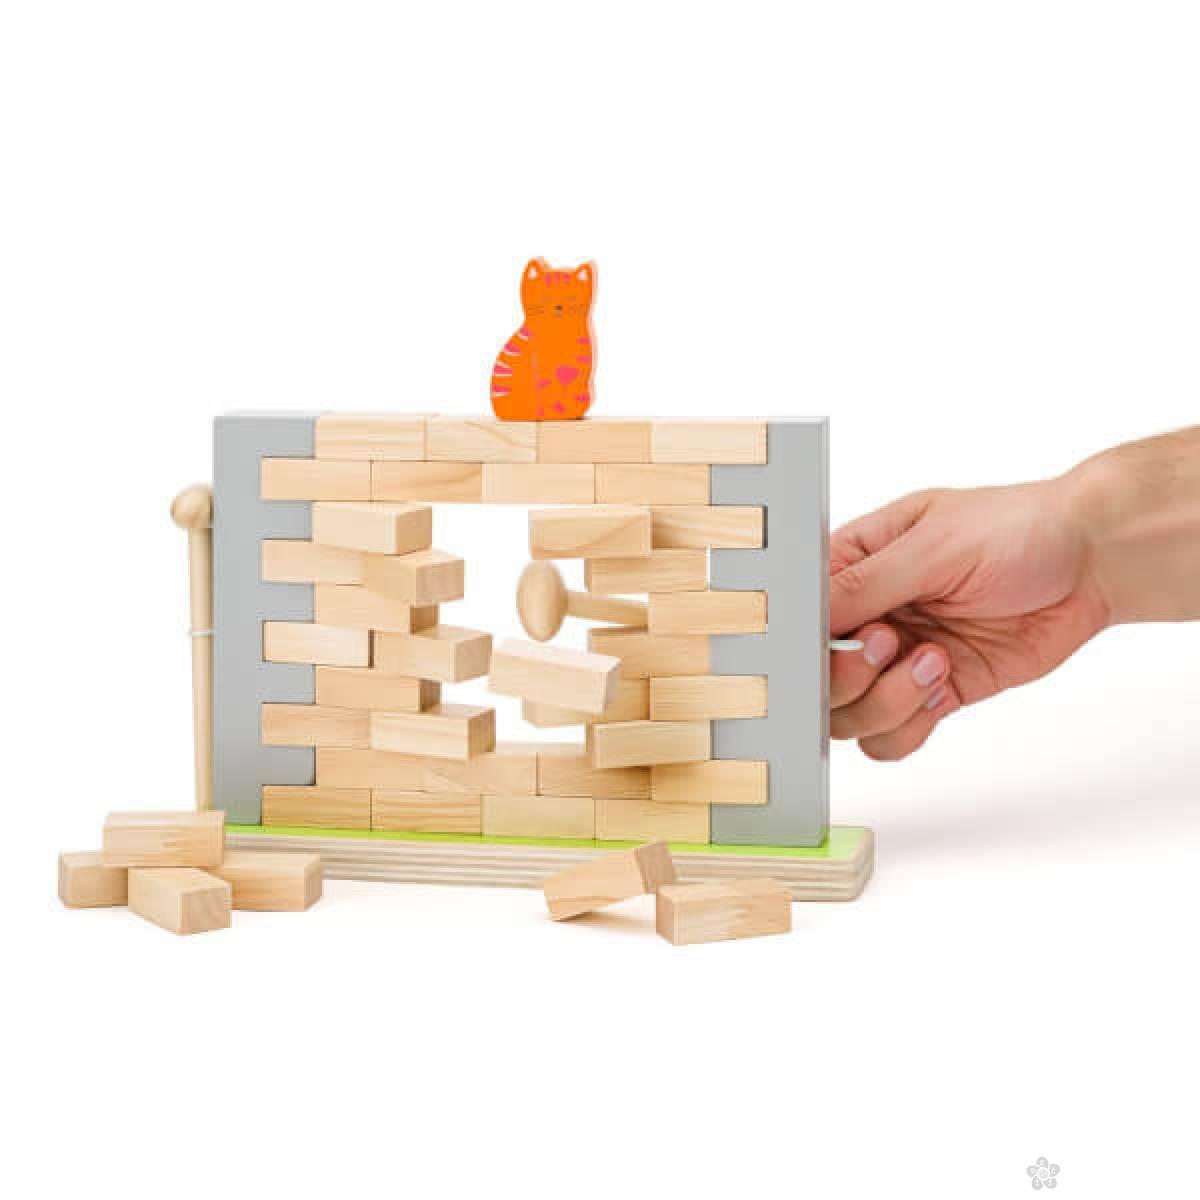 Igra ravnoteže - igra sa drvenim blokovima 91353 